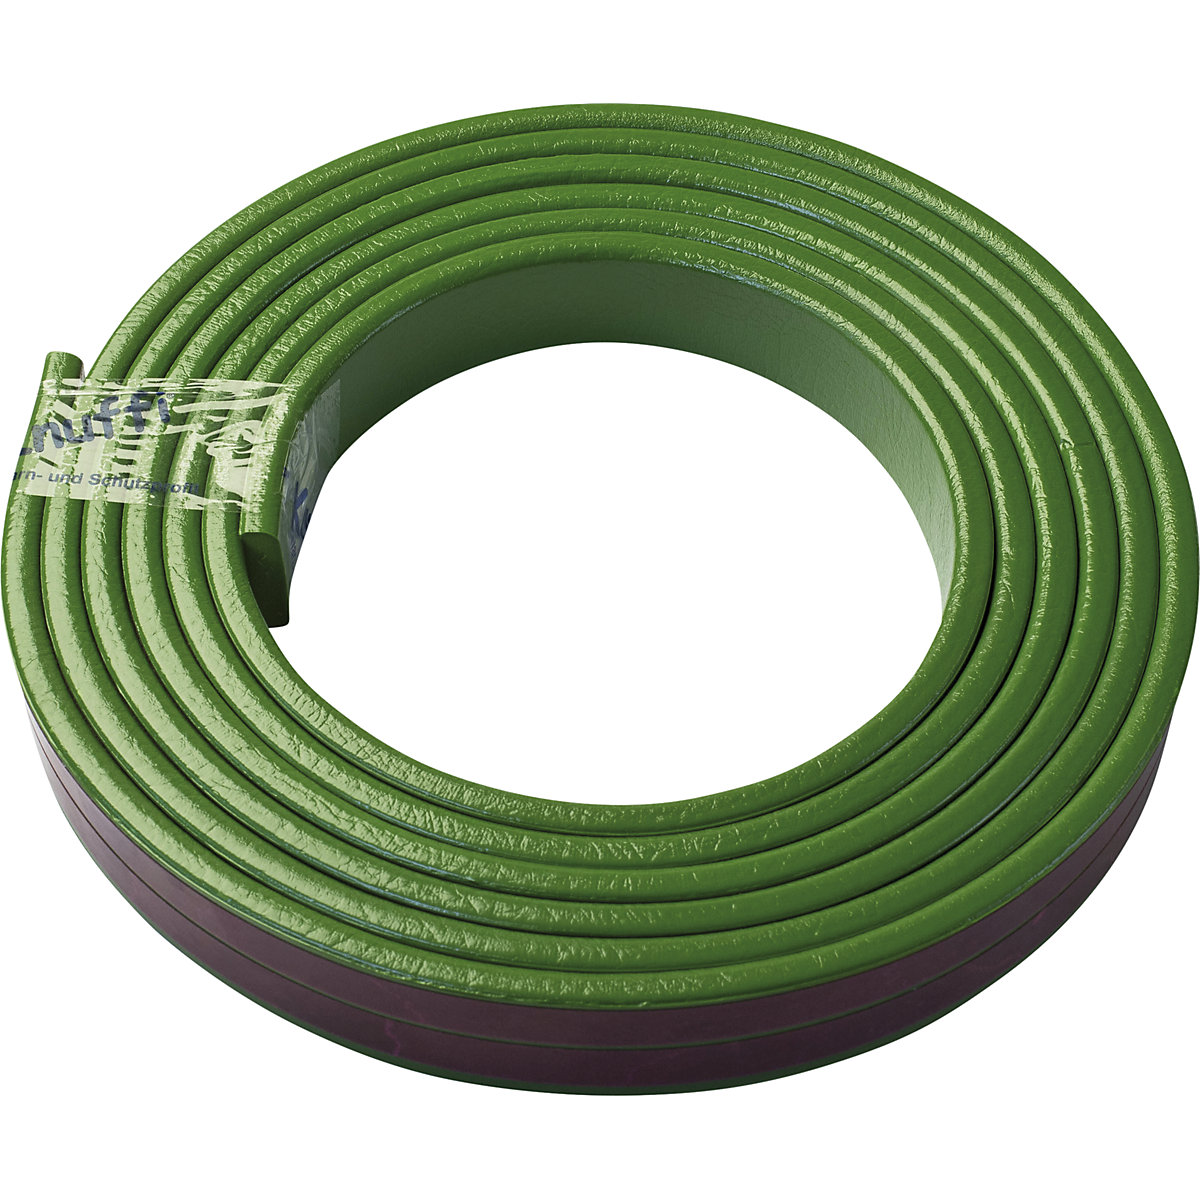 Protection des surfaces Knuffi® – SHG, type F, 1 rouleau de 5 m, vert